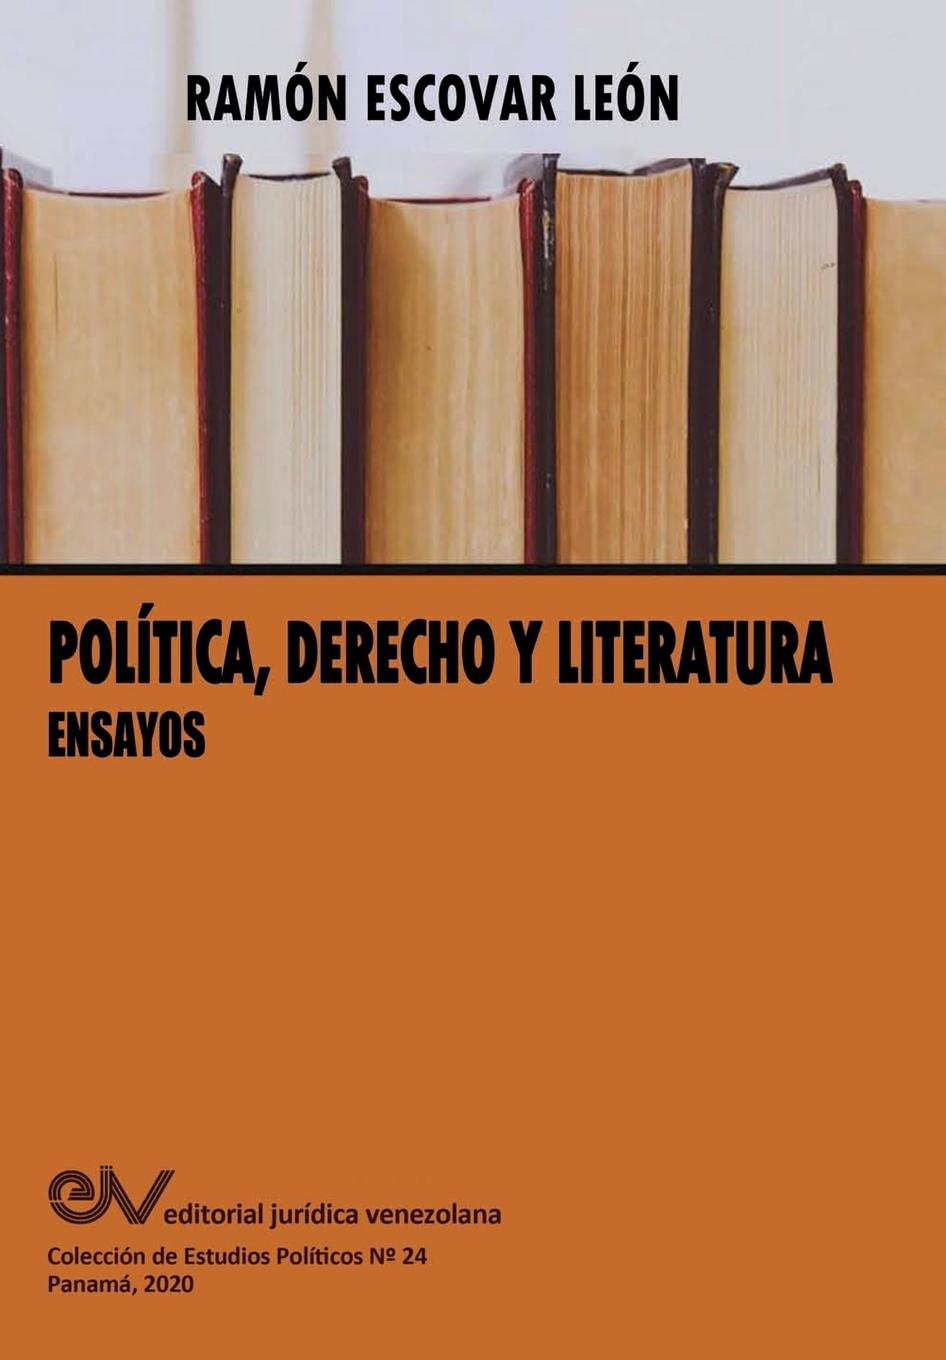 Kniha POLITICA, DERECHO Y LITERATURA. Ensayos 